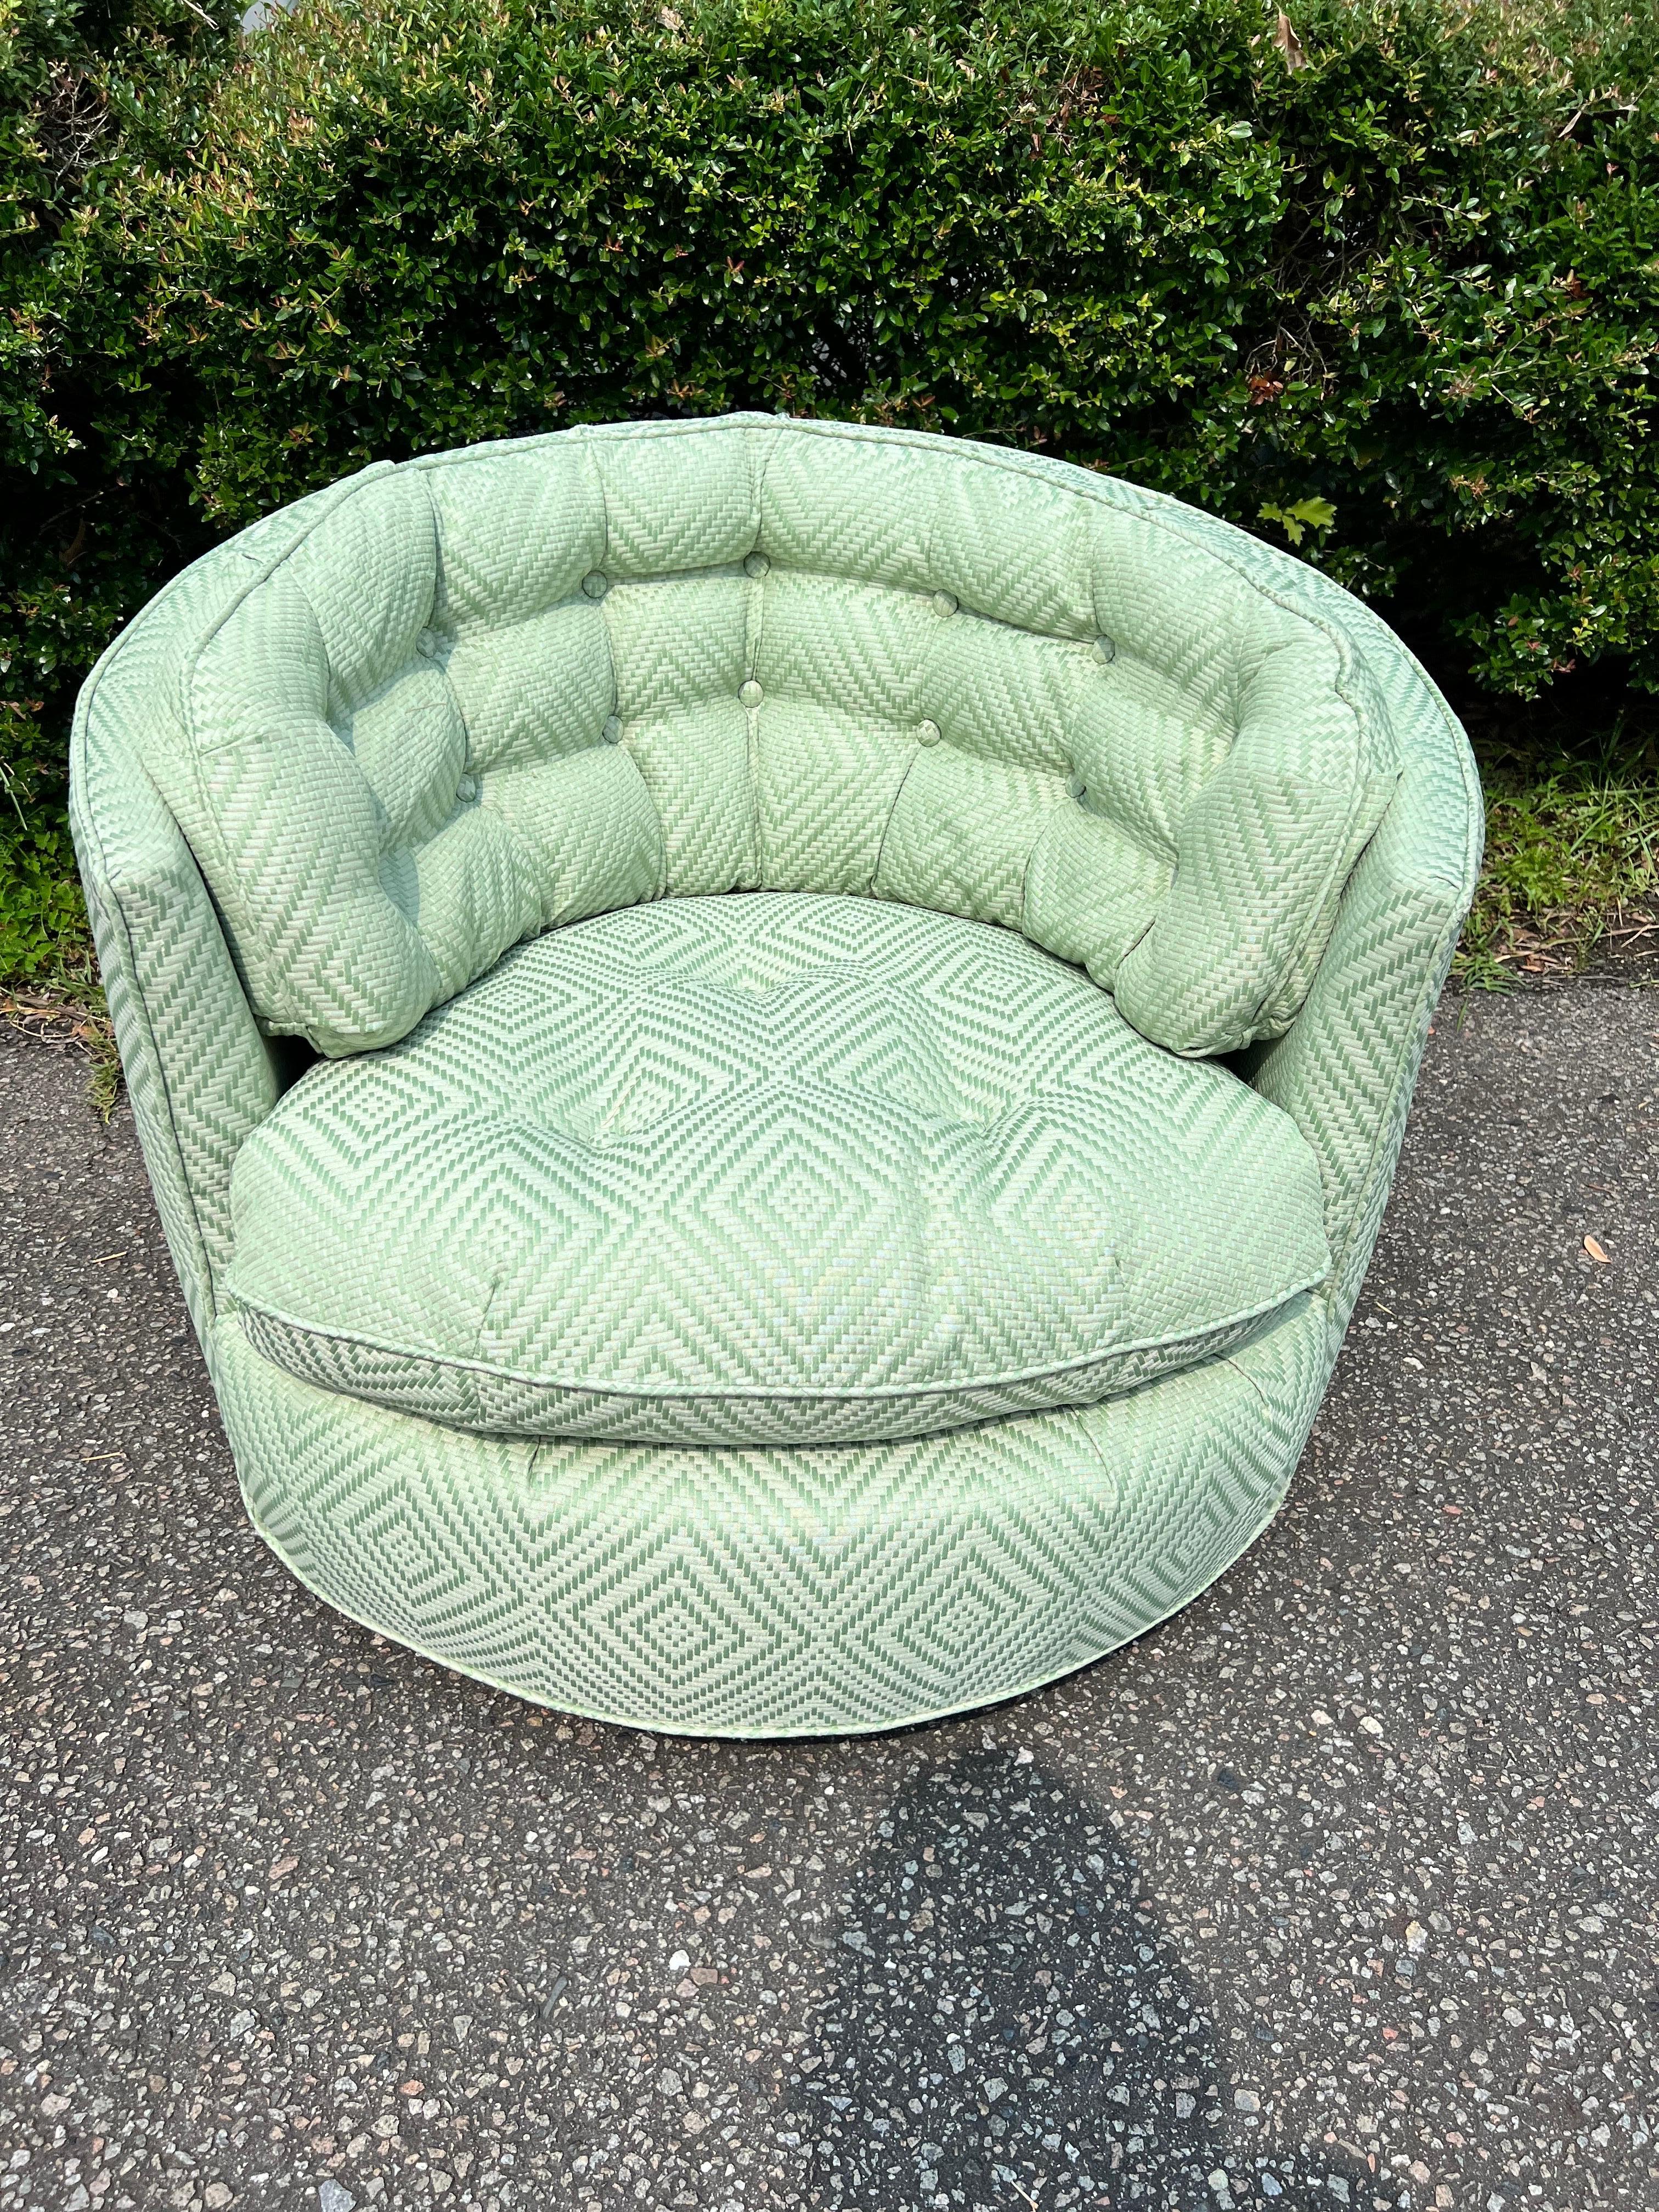 Fabuleuse chaise tapissée de Milo Baughman pour Thayer.   Nouvellement tapissé d'un tissu d'ameublement vert à losanges. Fauteuil pivotant à boutons touffus sur base en noyer.  Cette chaise a été rénovée de fond en comble.   Et c'est tellement